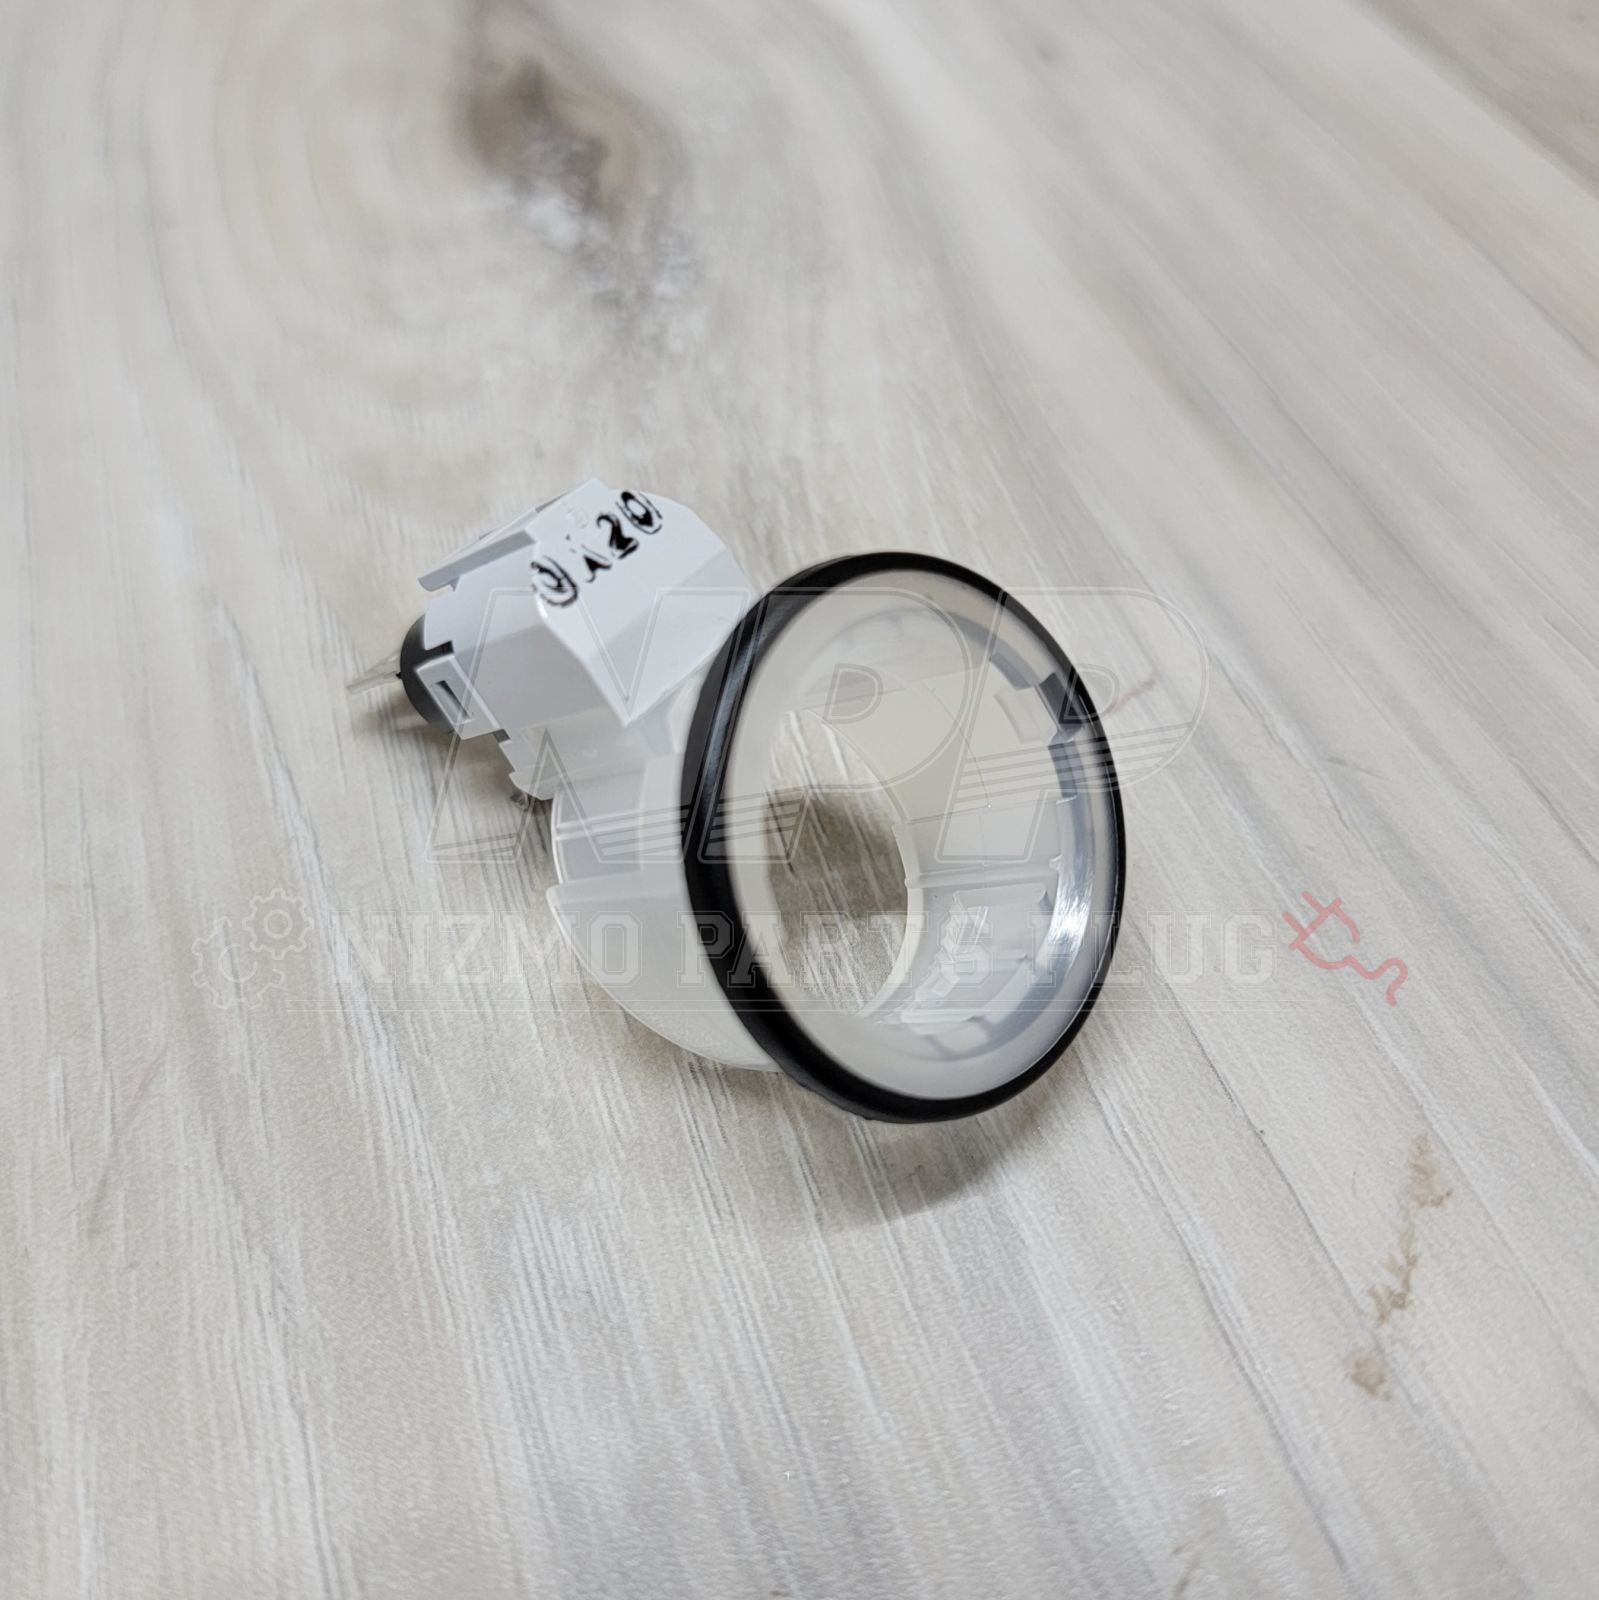 R33/34 Skyline Lighter Ring